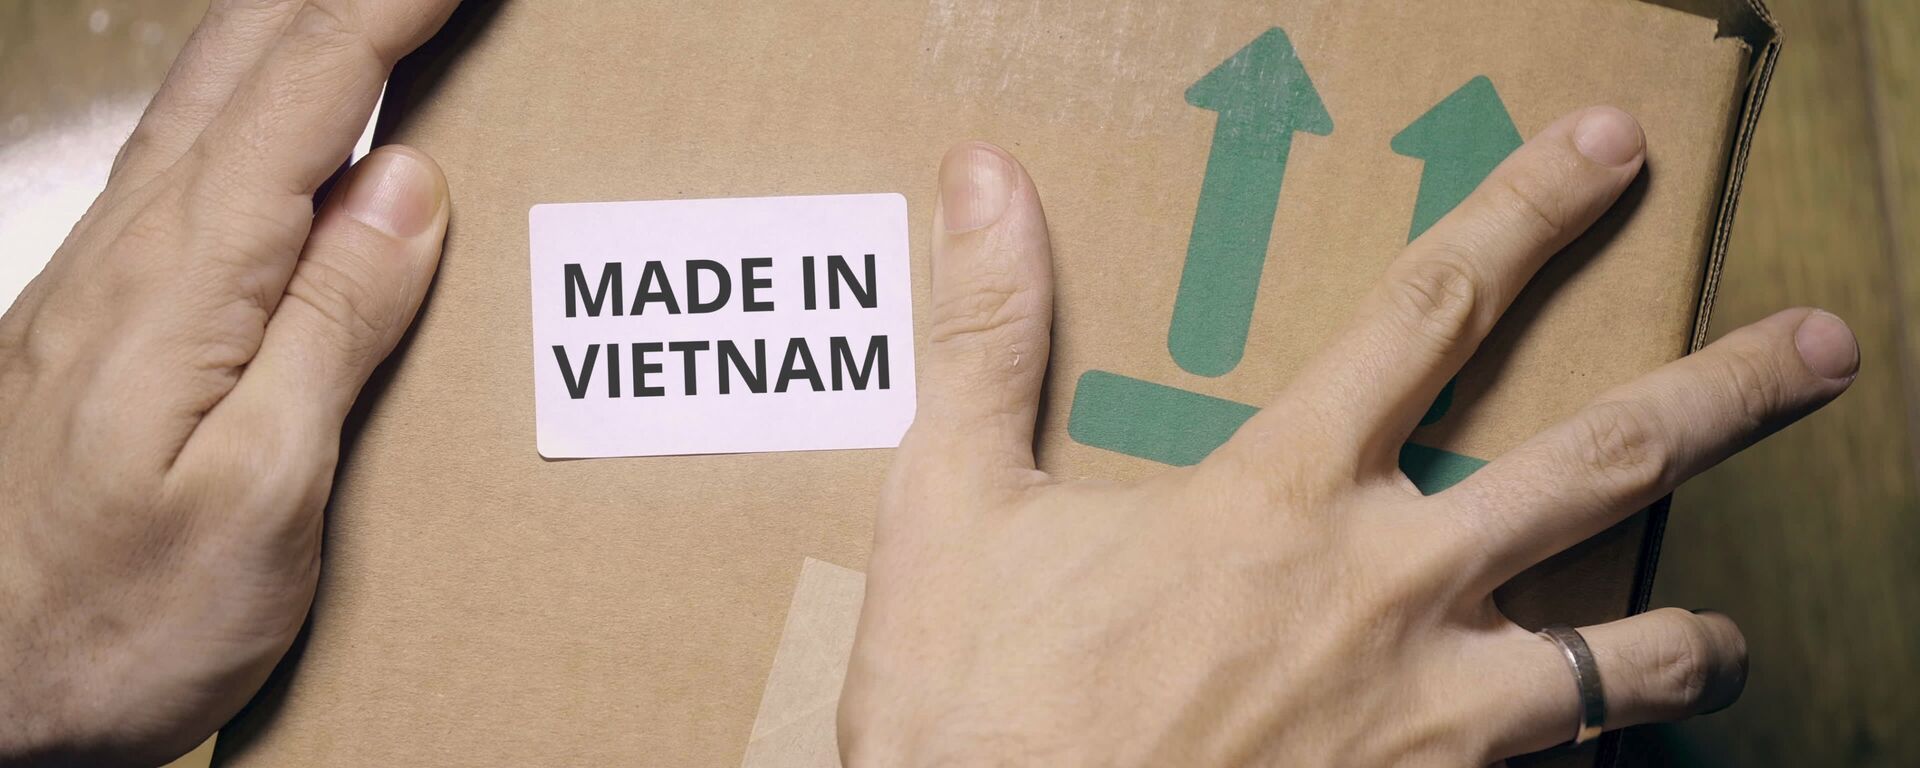 Made in Vietnam - Sputnik Việt Nam, 1920, 02.08.2019